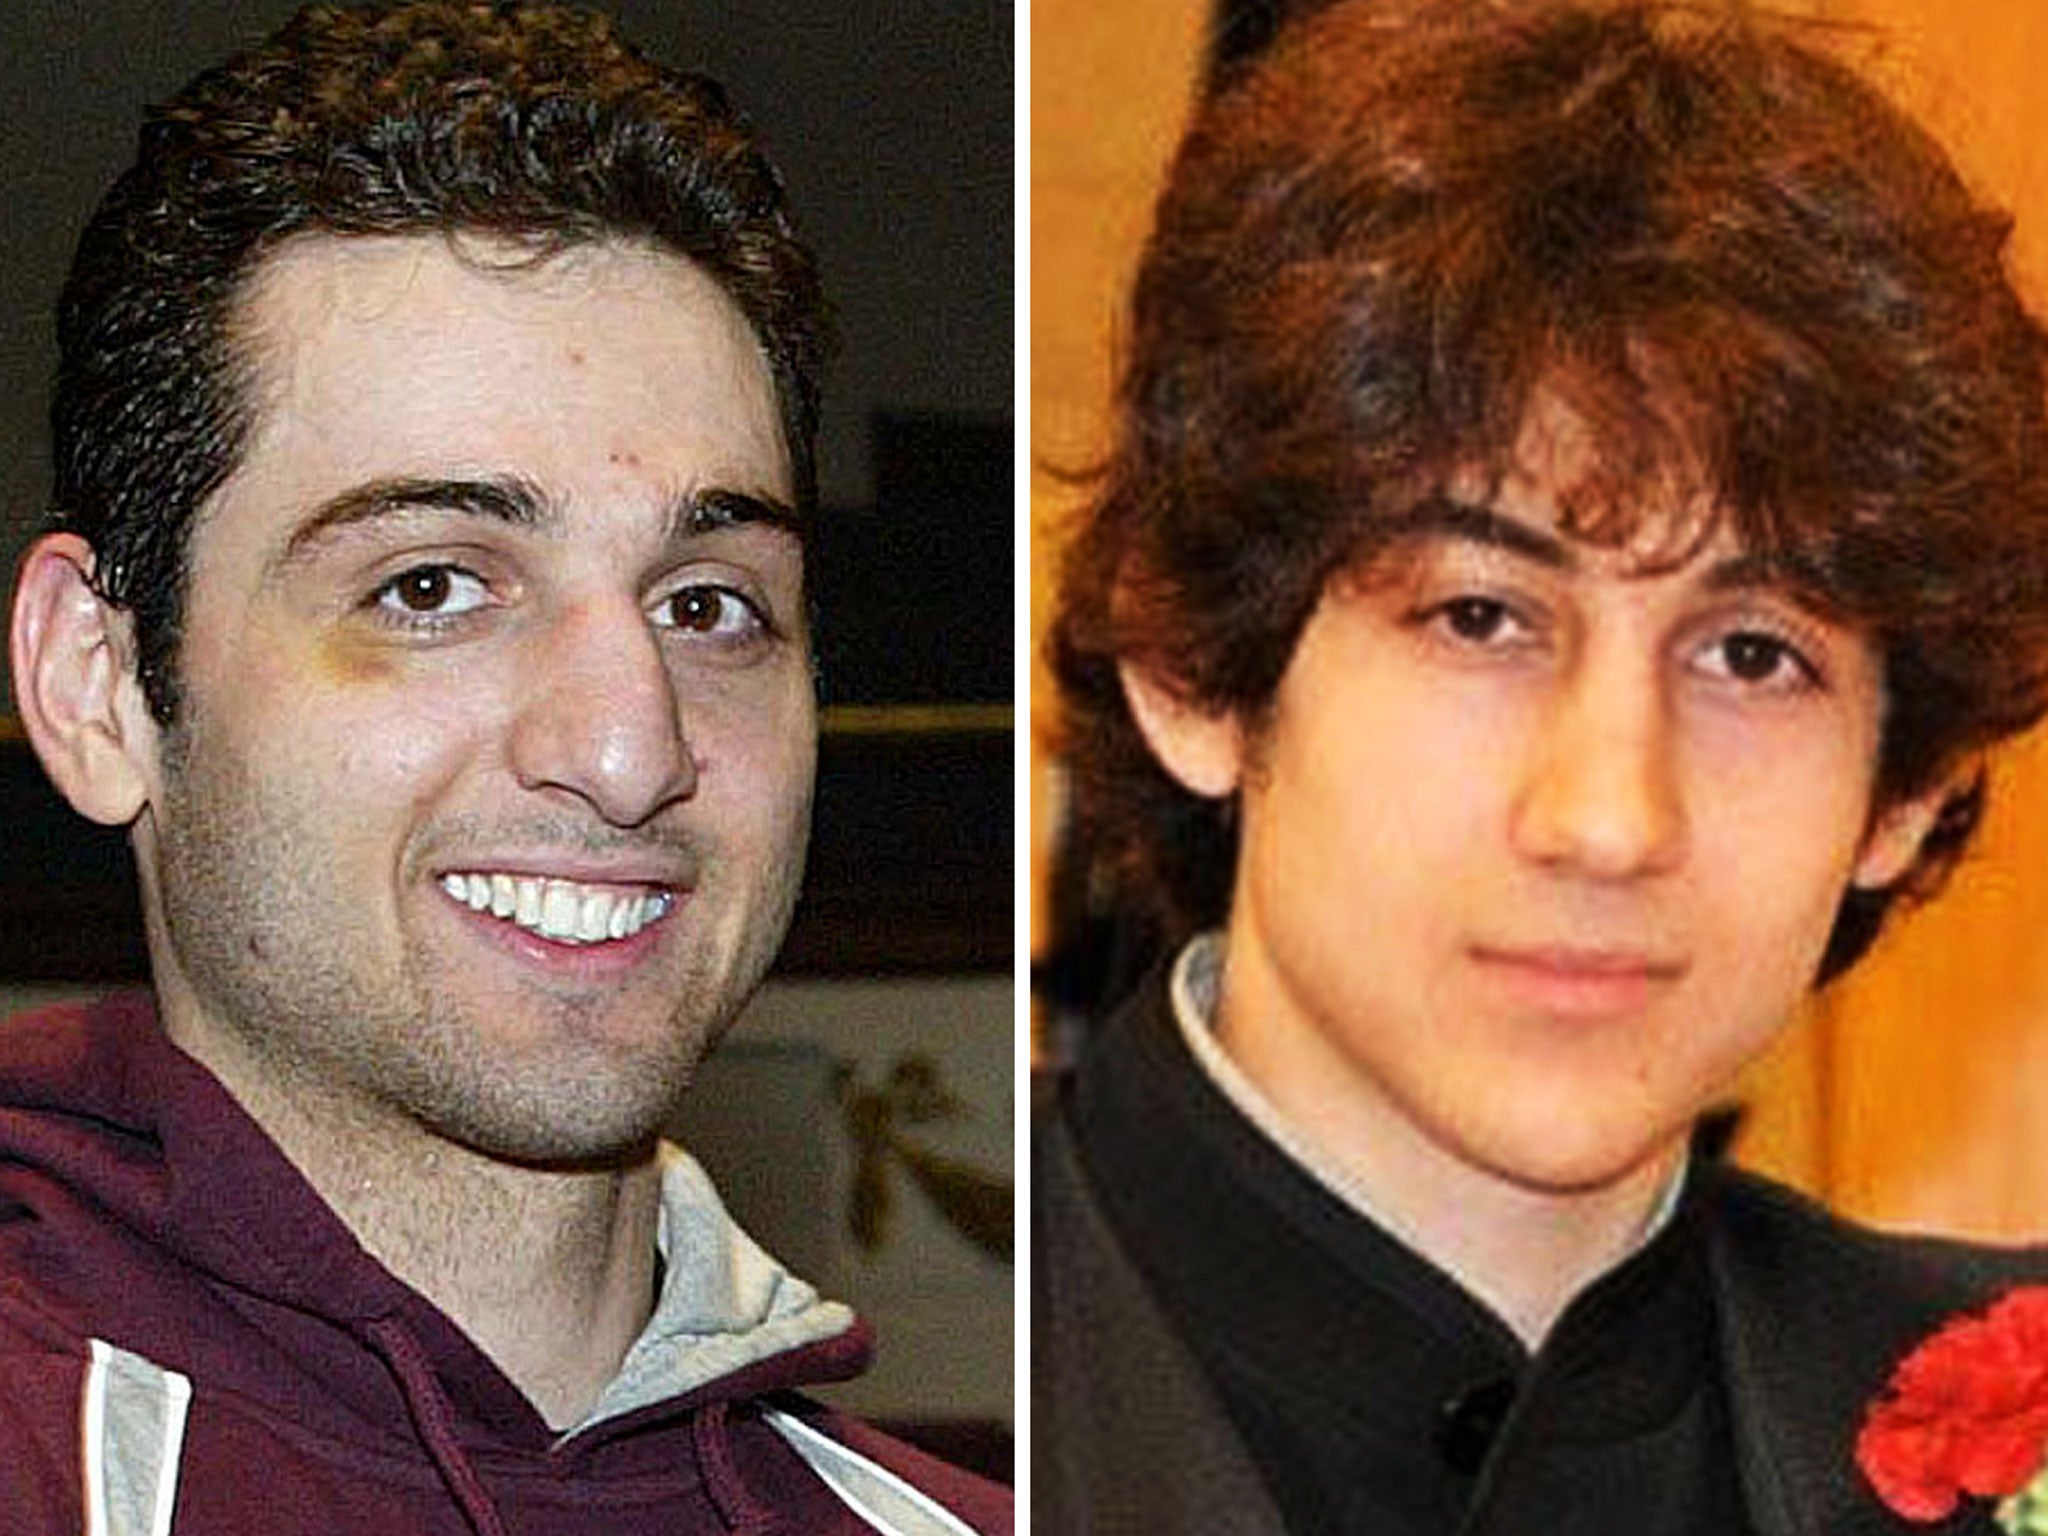 Danny spent 90 minutes in the car with Tamerlan Tsarnaev, left, and Dzhokhar Tsarnaev, right